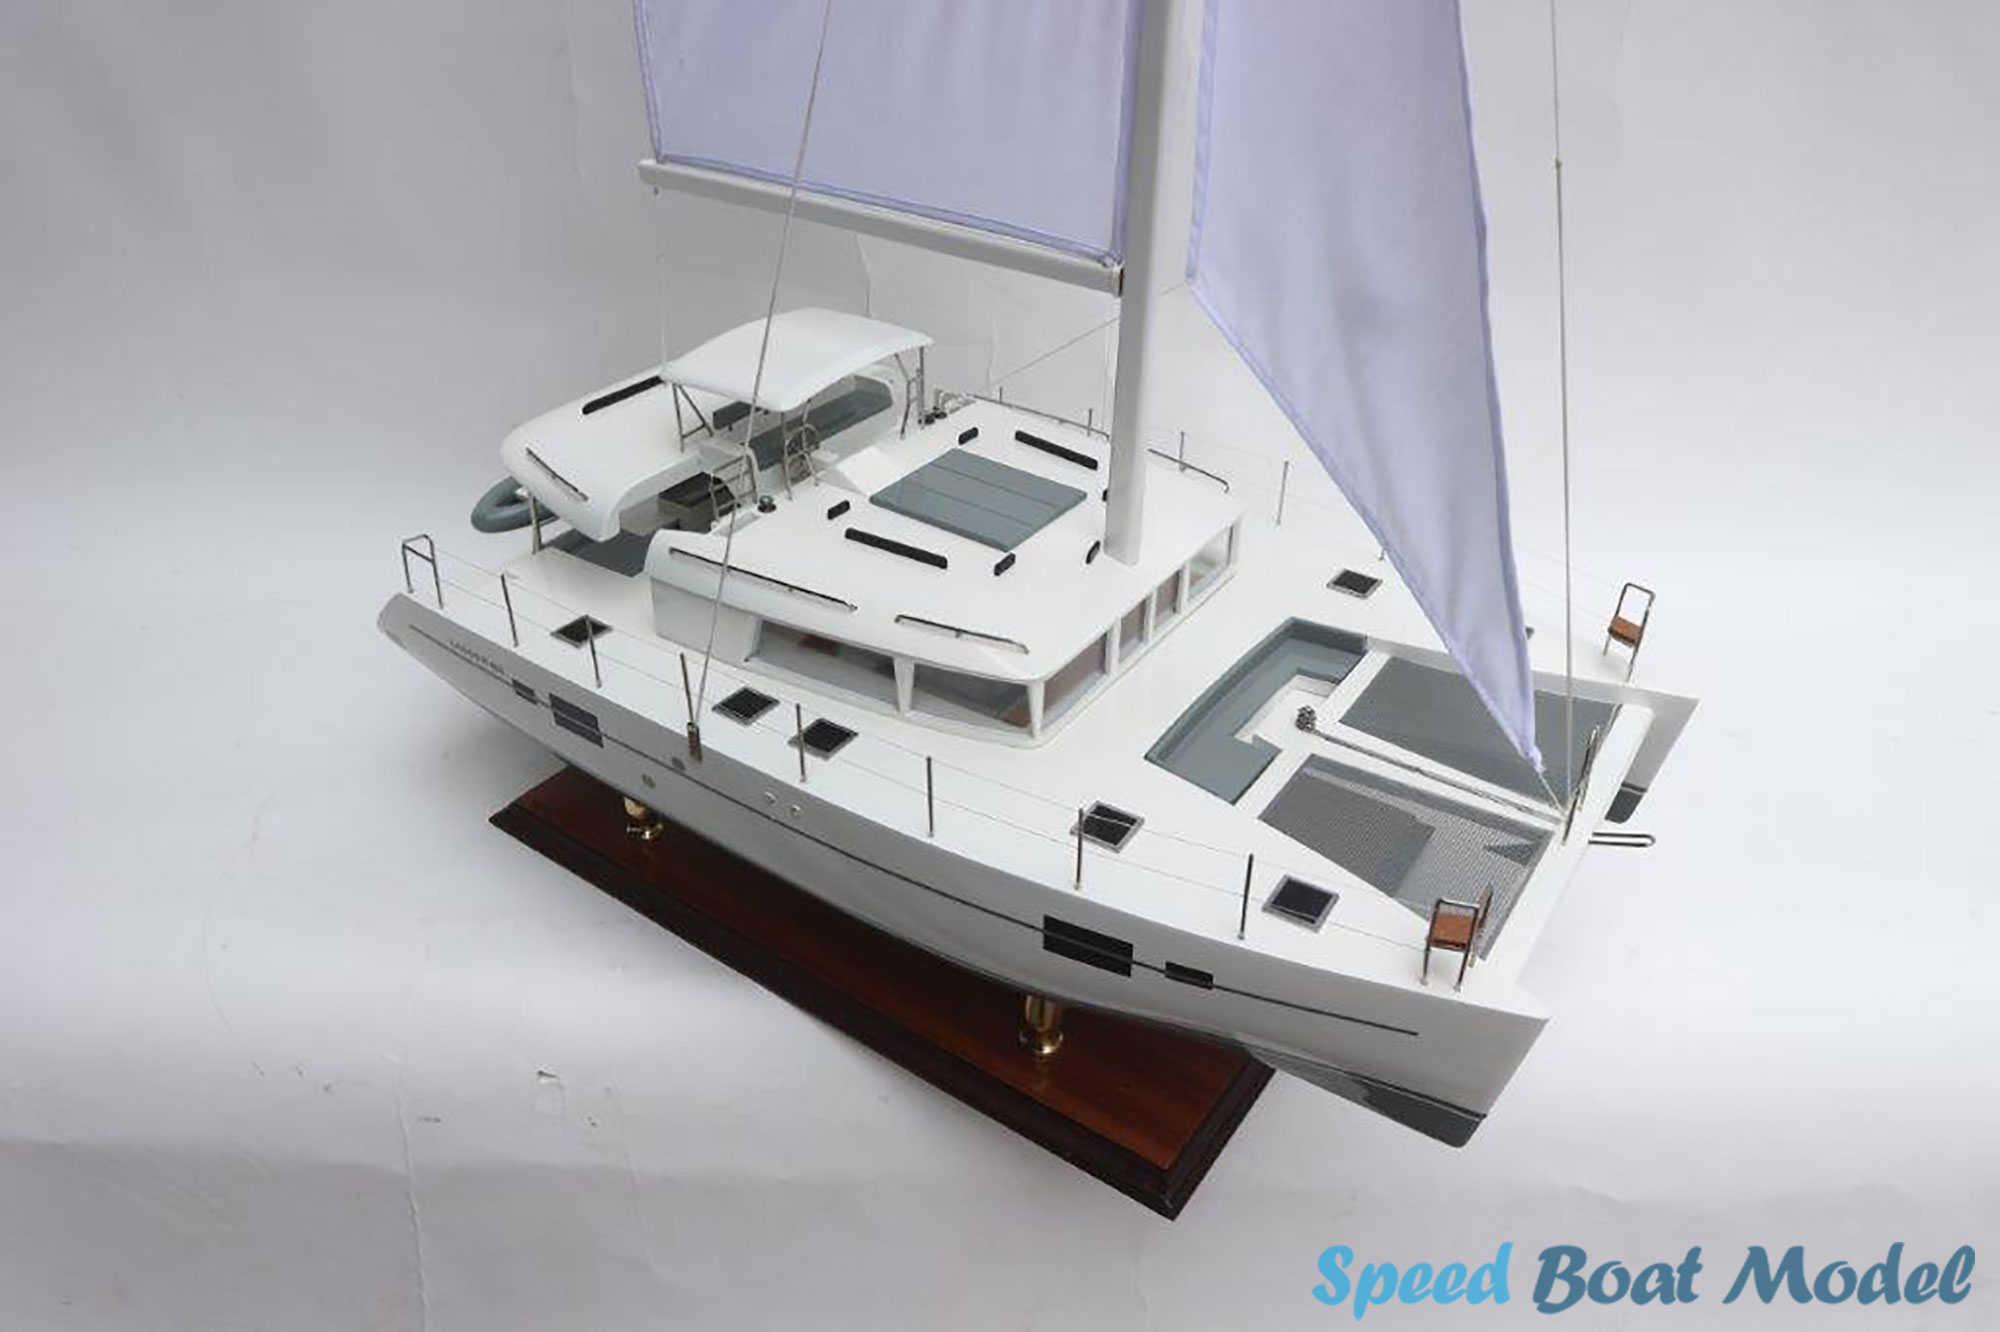 Lagoon 450f Catamaran Modern Yacht Model 27.5